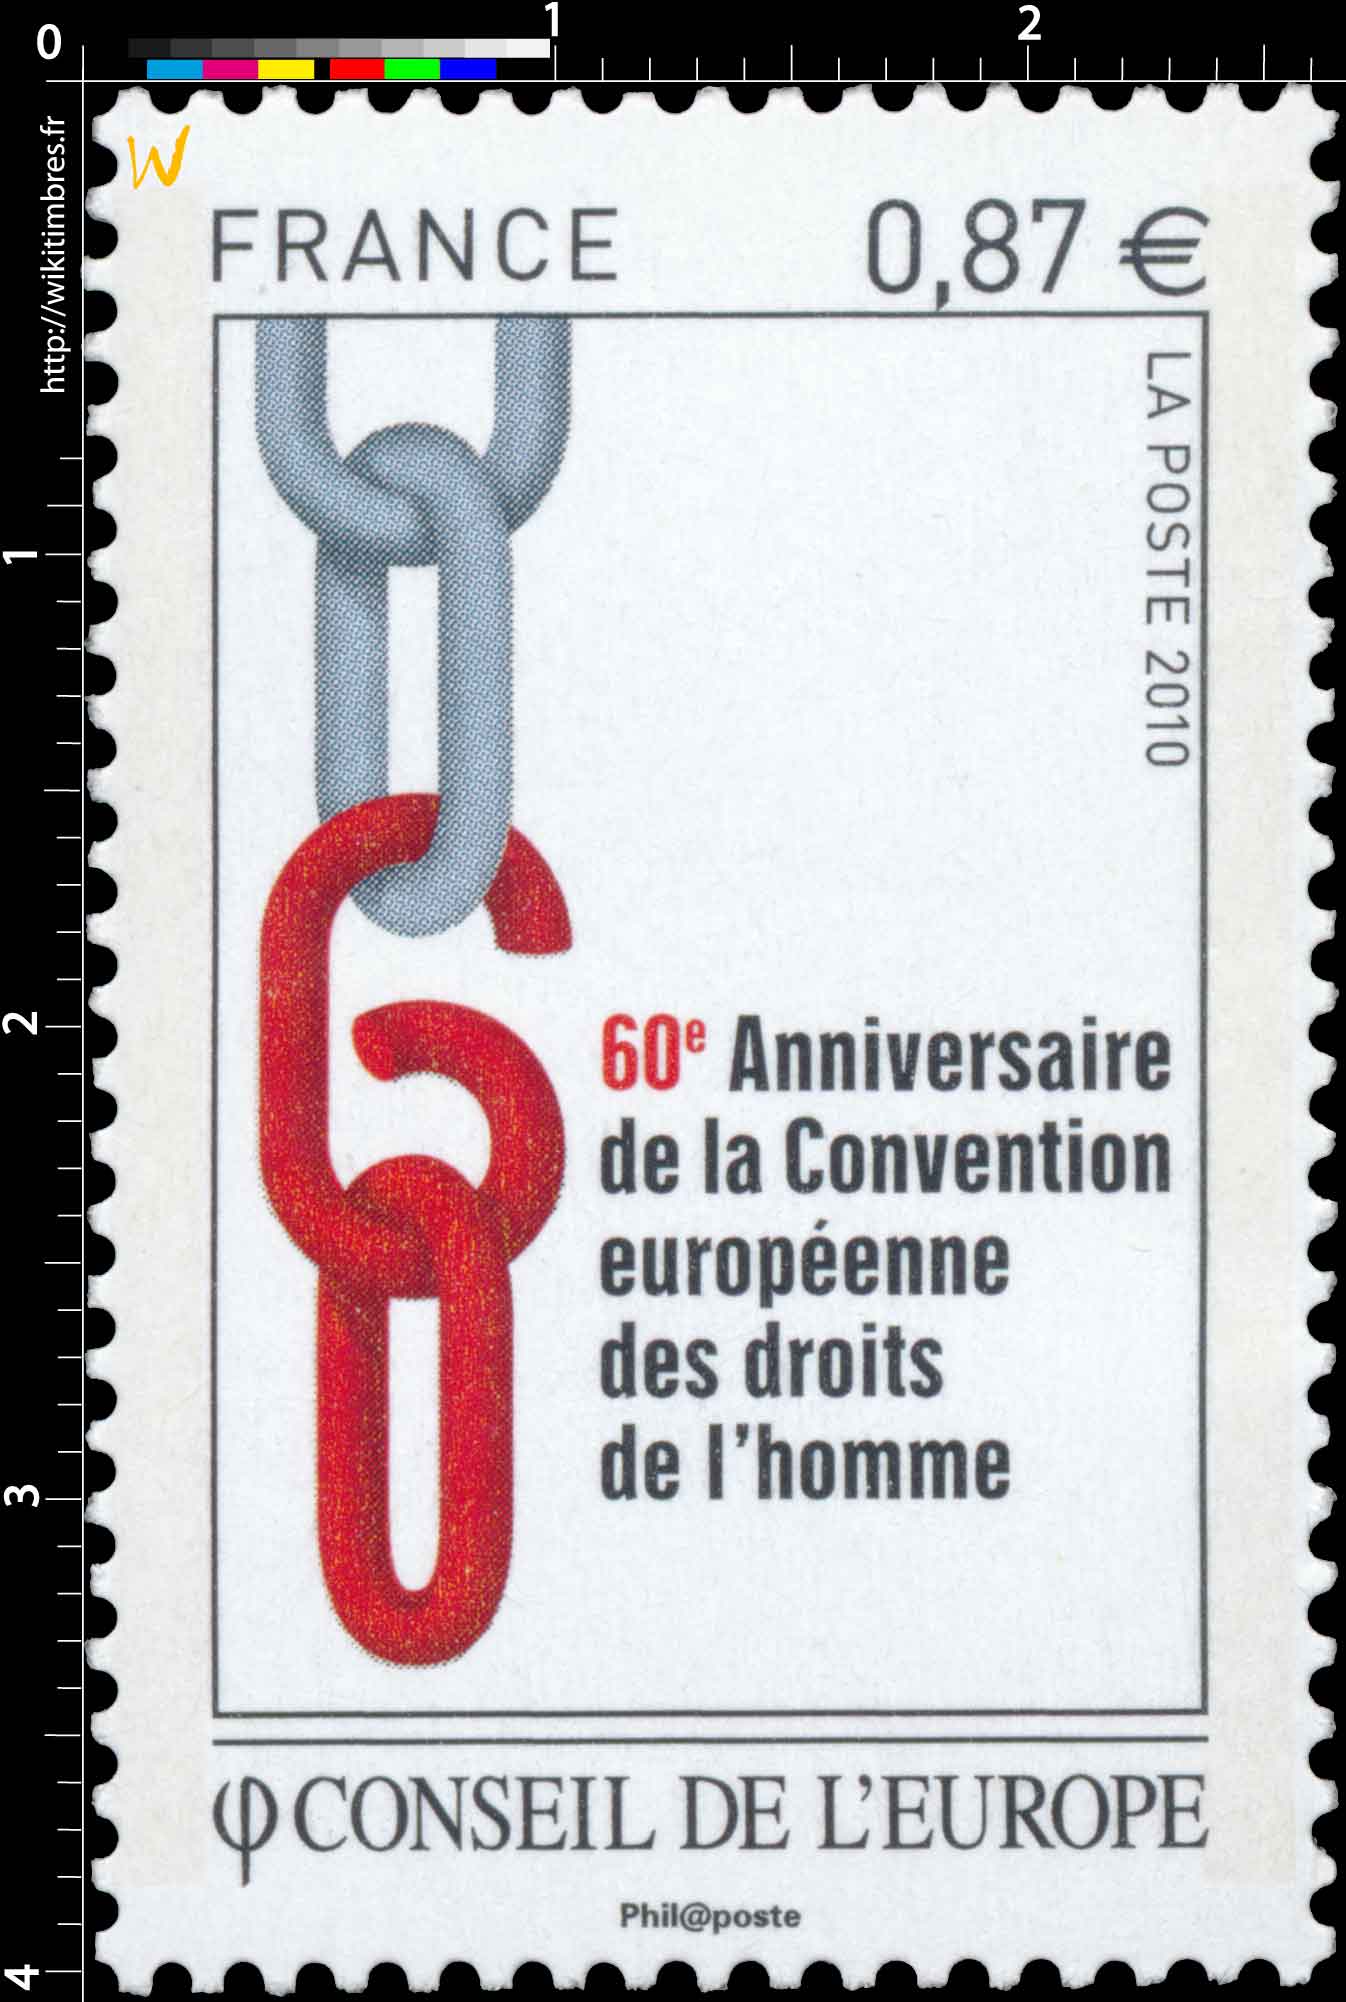 2010 Conseil de l’Europe - 60e Anniversaire de la Convention européenne des droits de l’homme